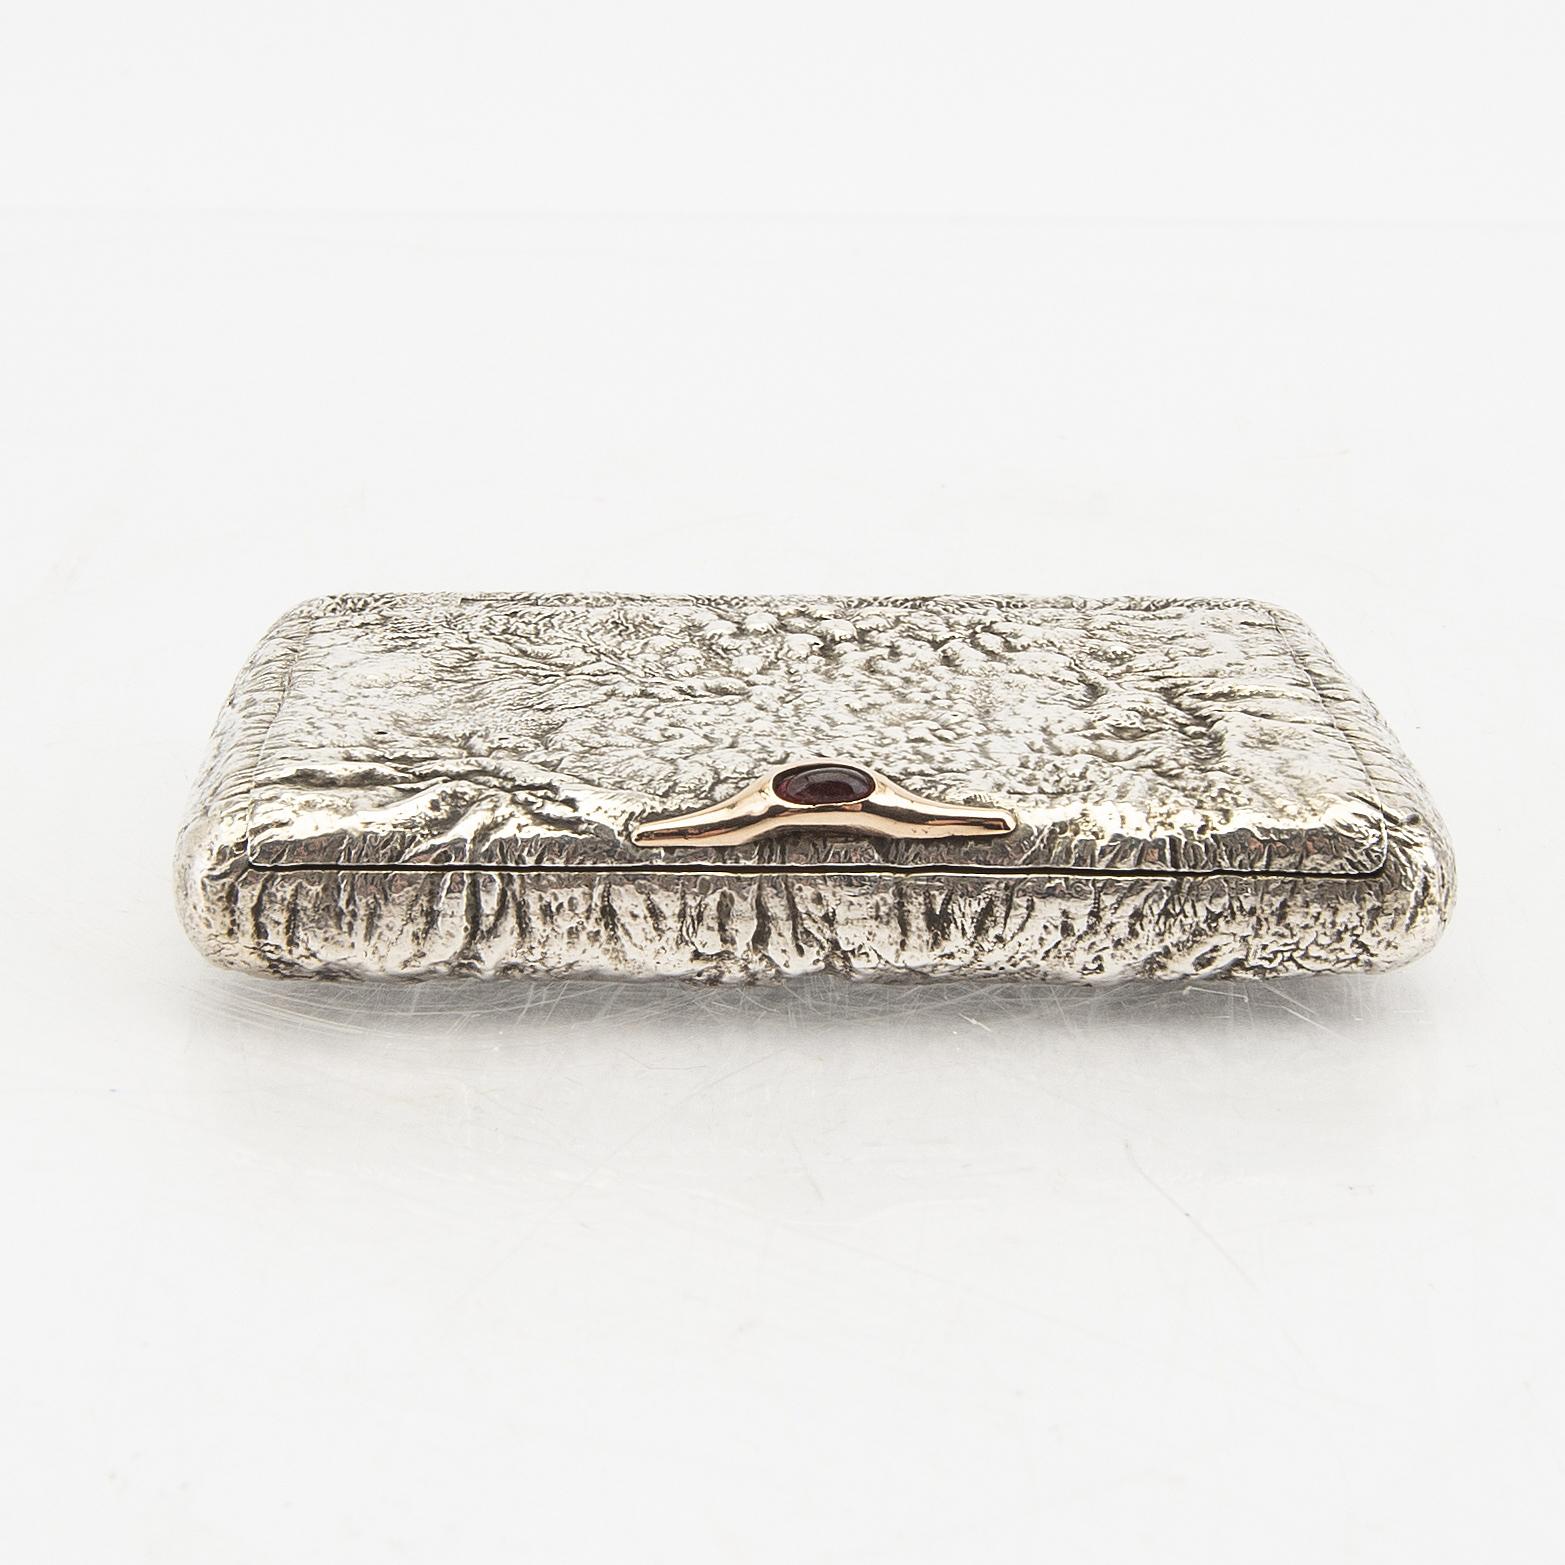 European Samodorok Silver Cigarette Case Russia 1900 